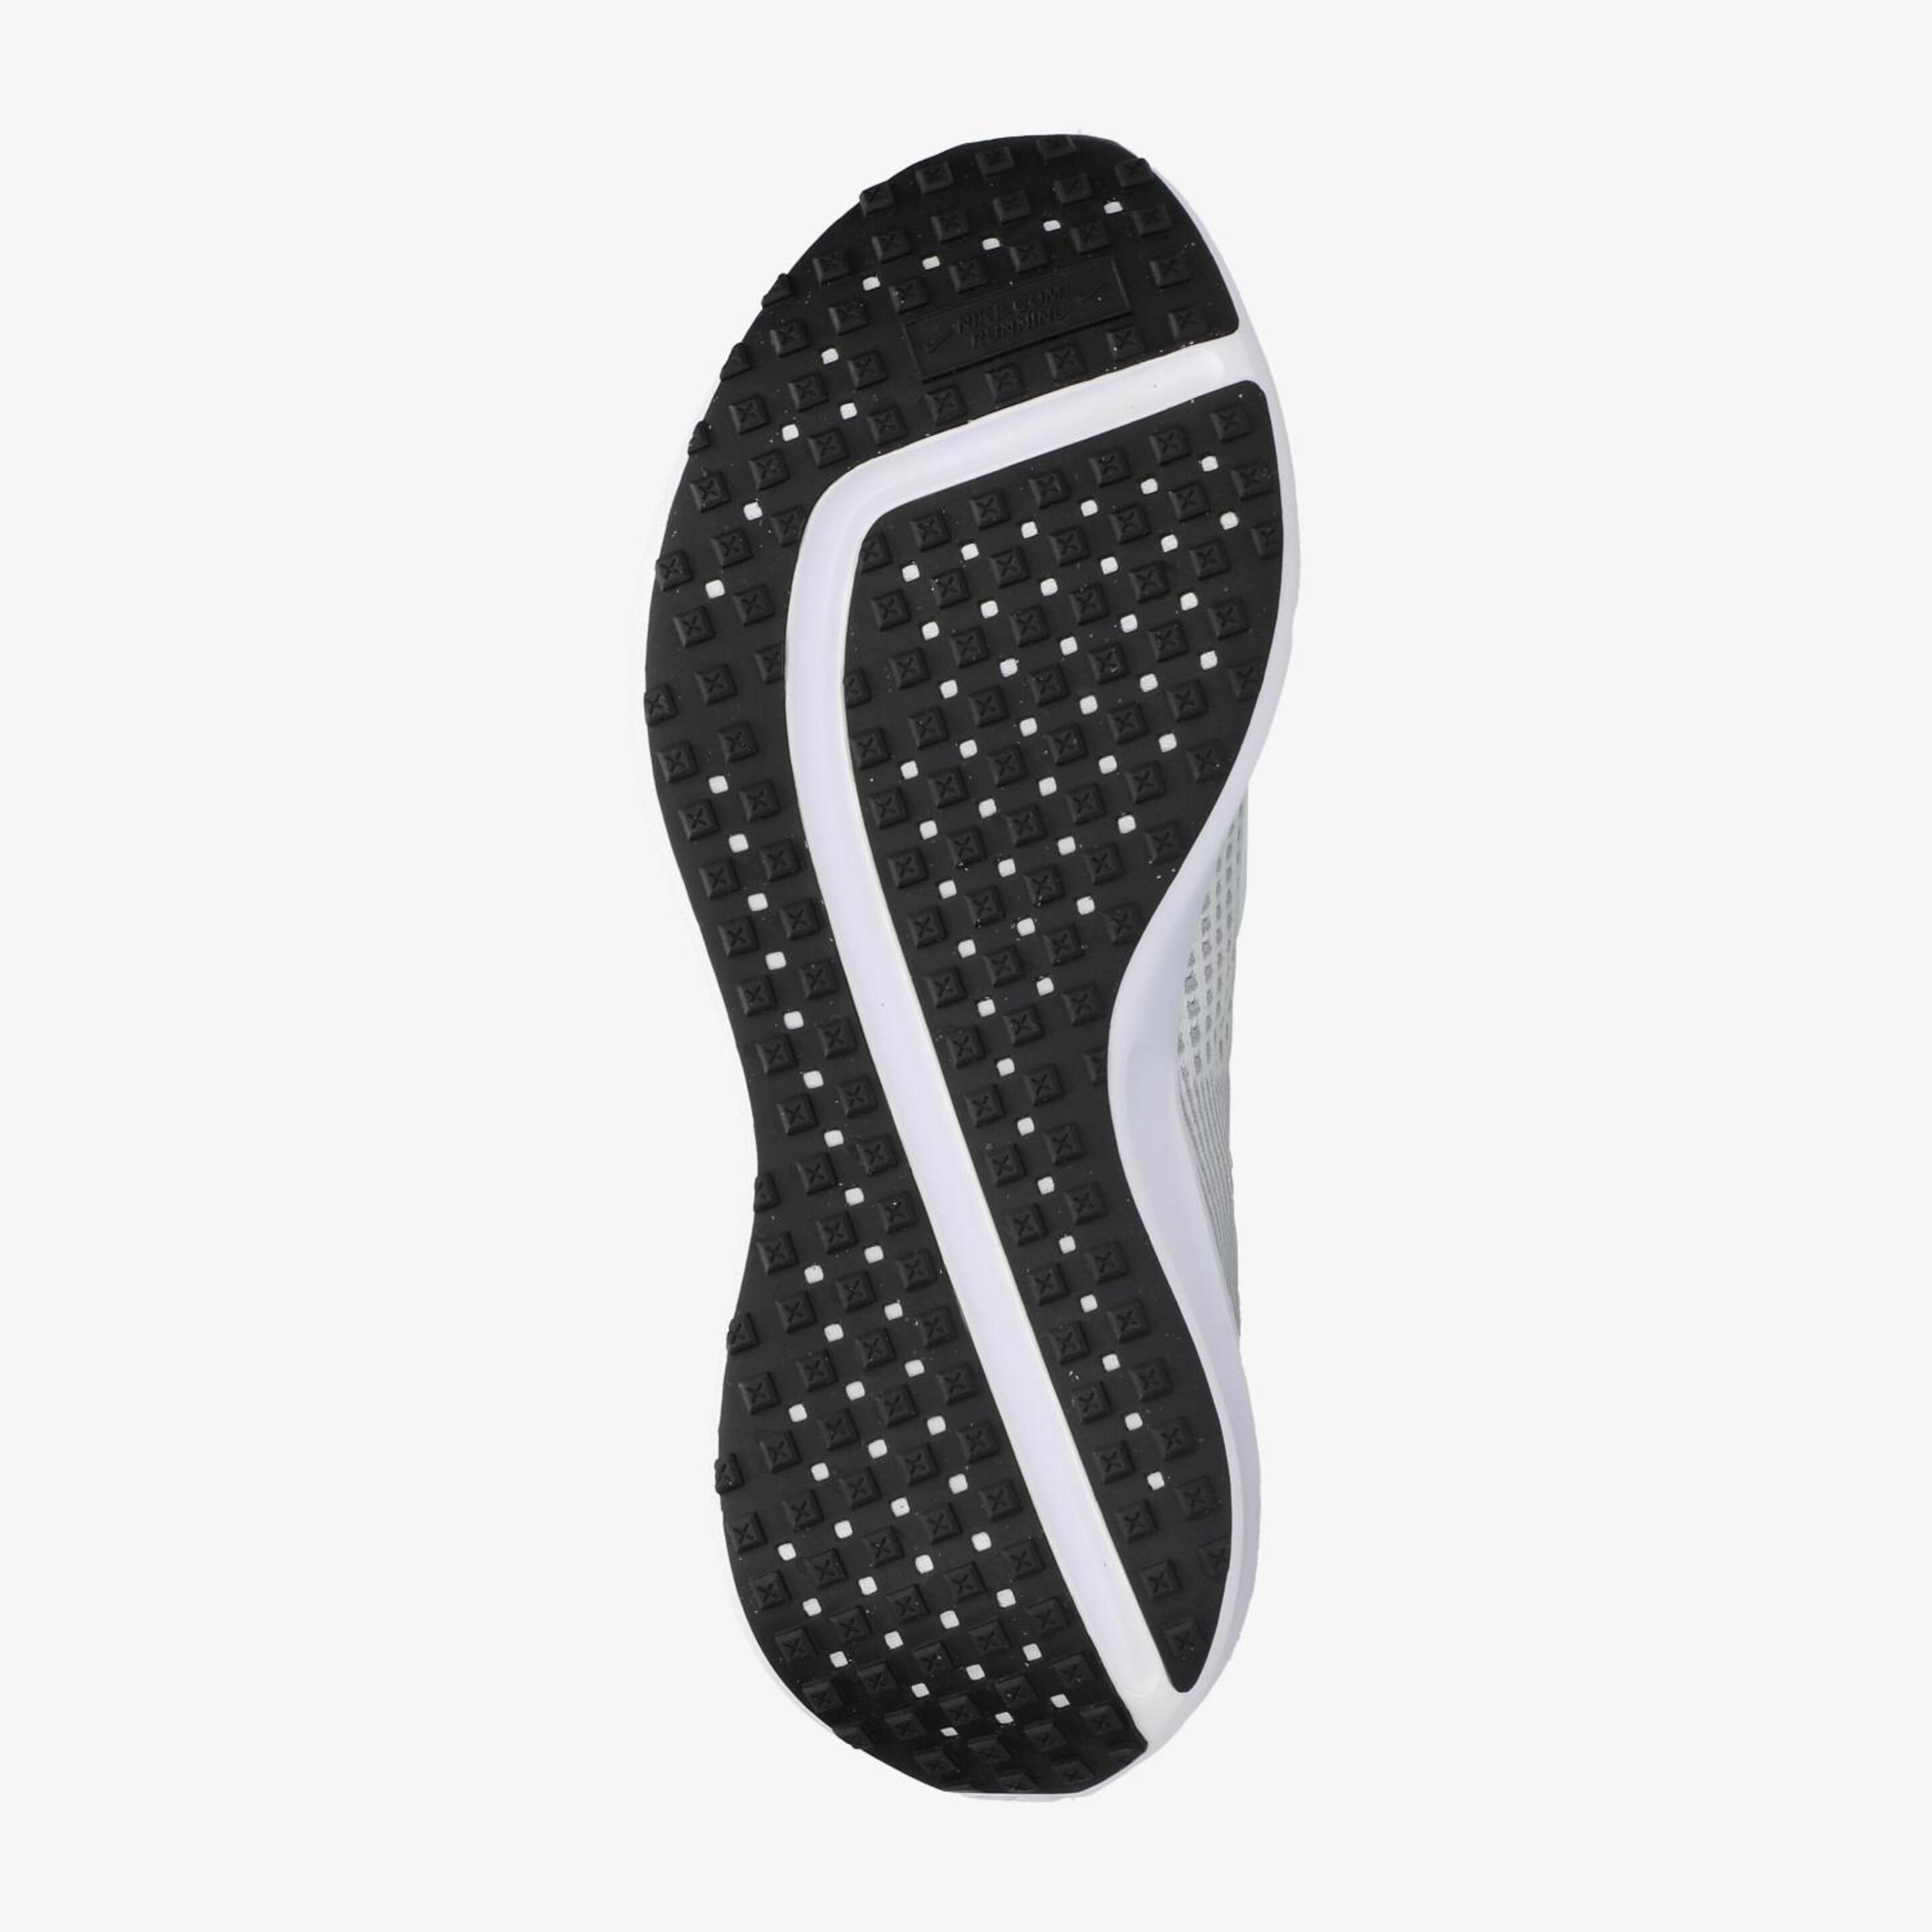 Nike Interact Run - Blanco - Zapatillas Running Hombre